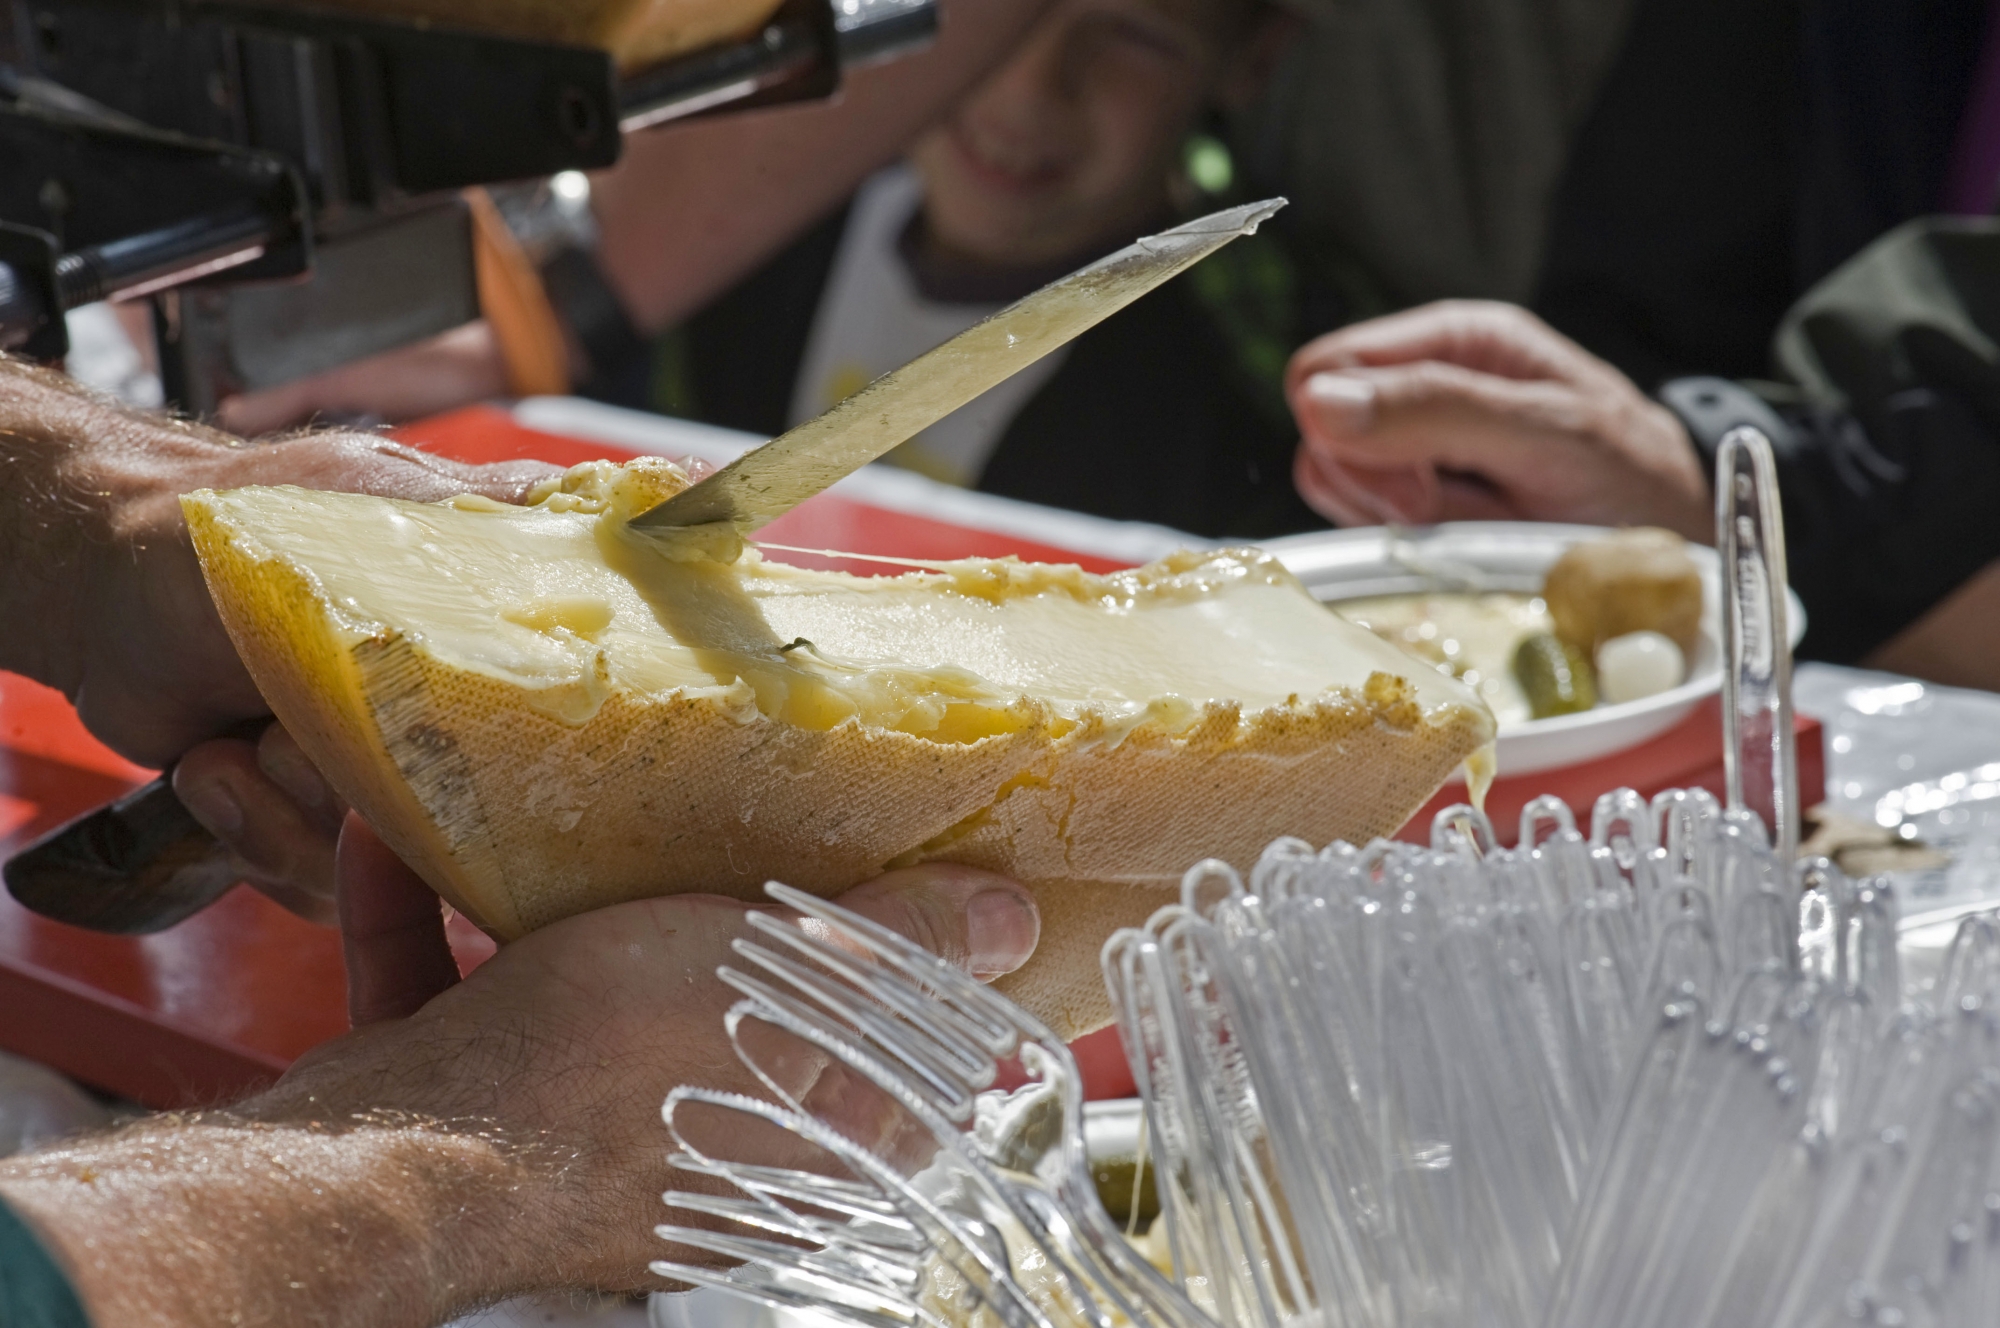 Ce dimanche 25 août, les amateurs de raclette pourront déguster les fromages de cette année à l'alpage de l'Au de Morge, sur Saint-Gingolph.